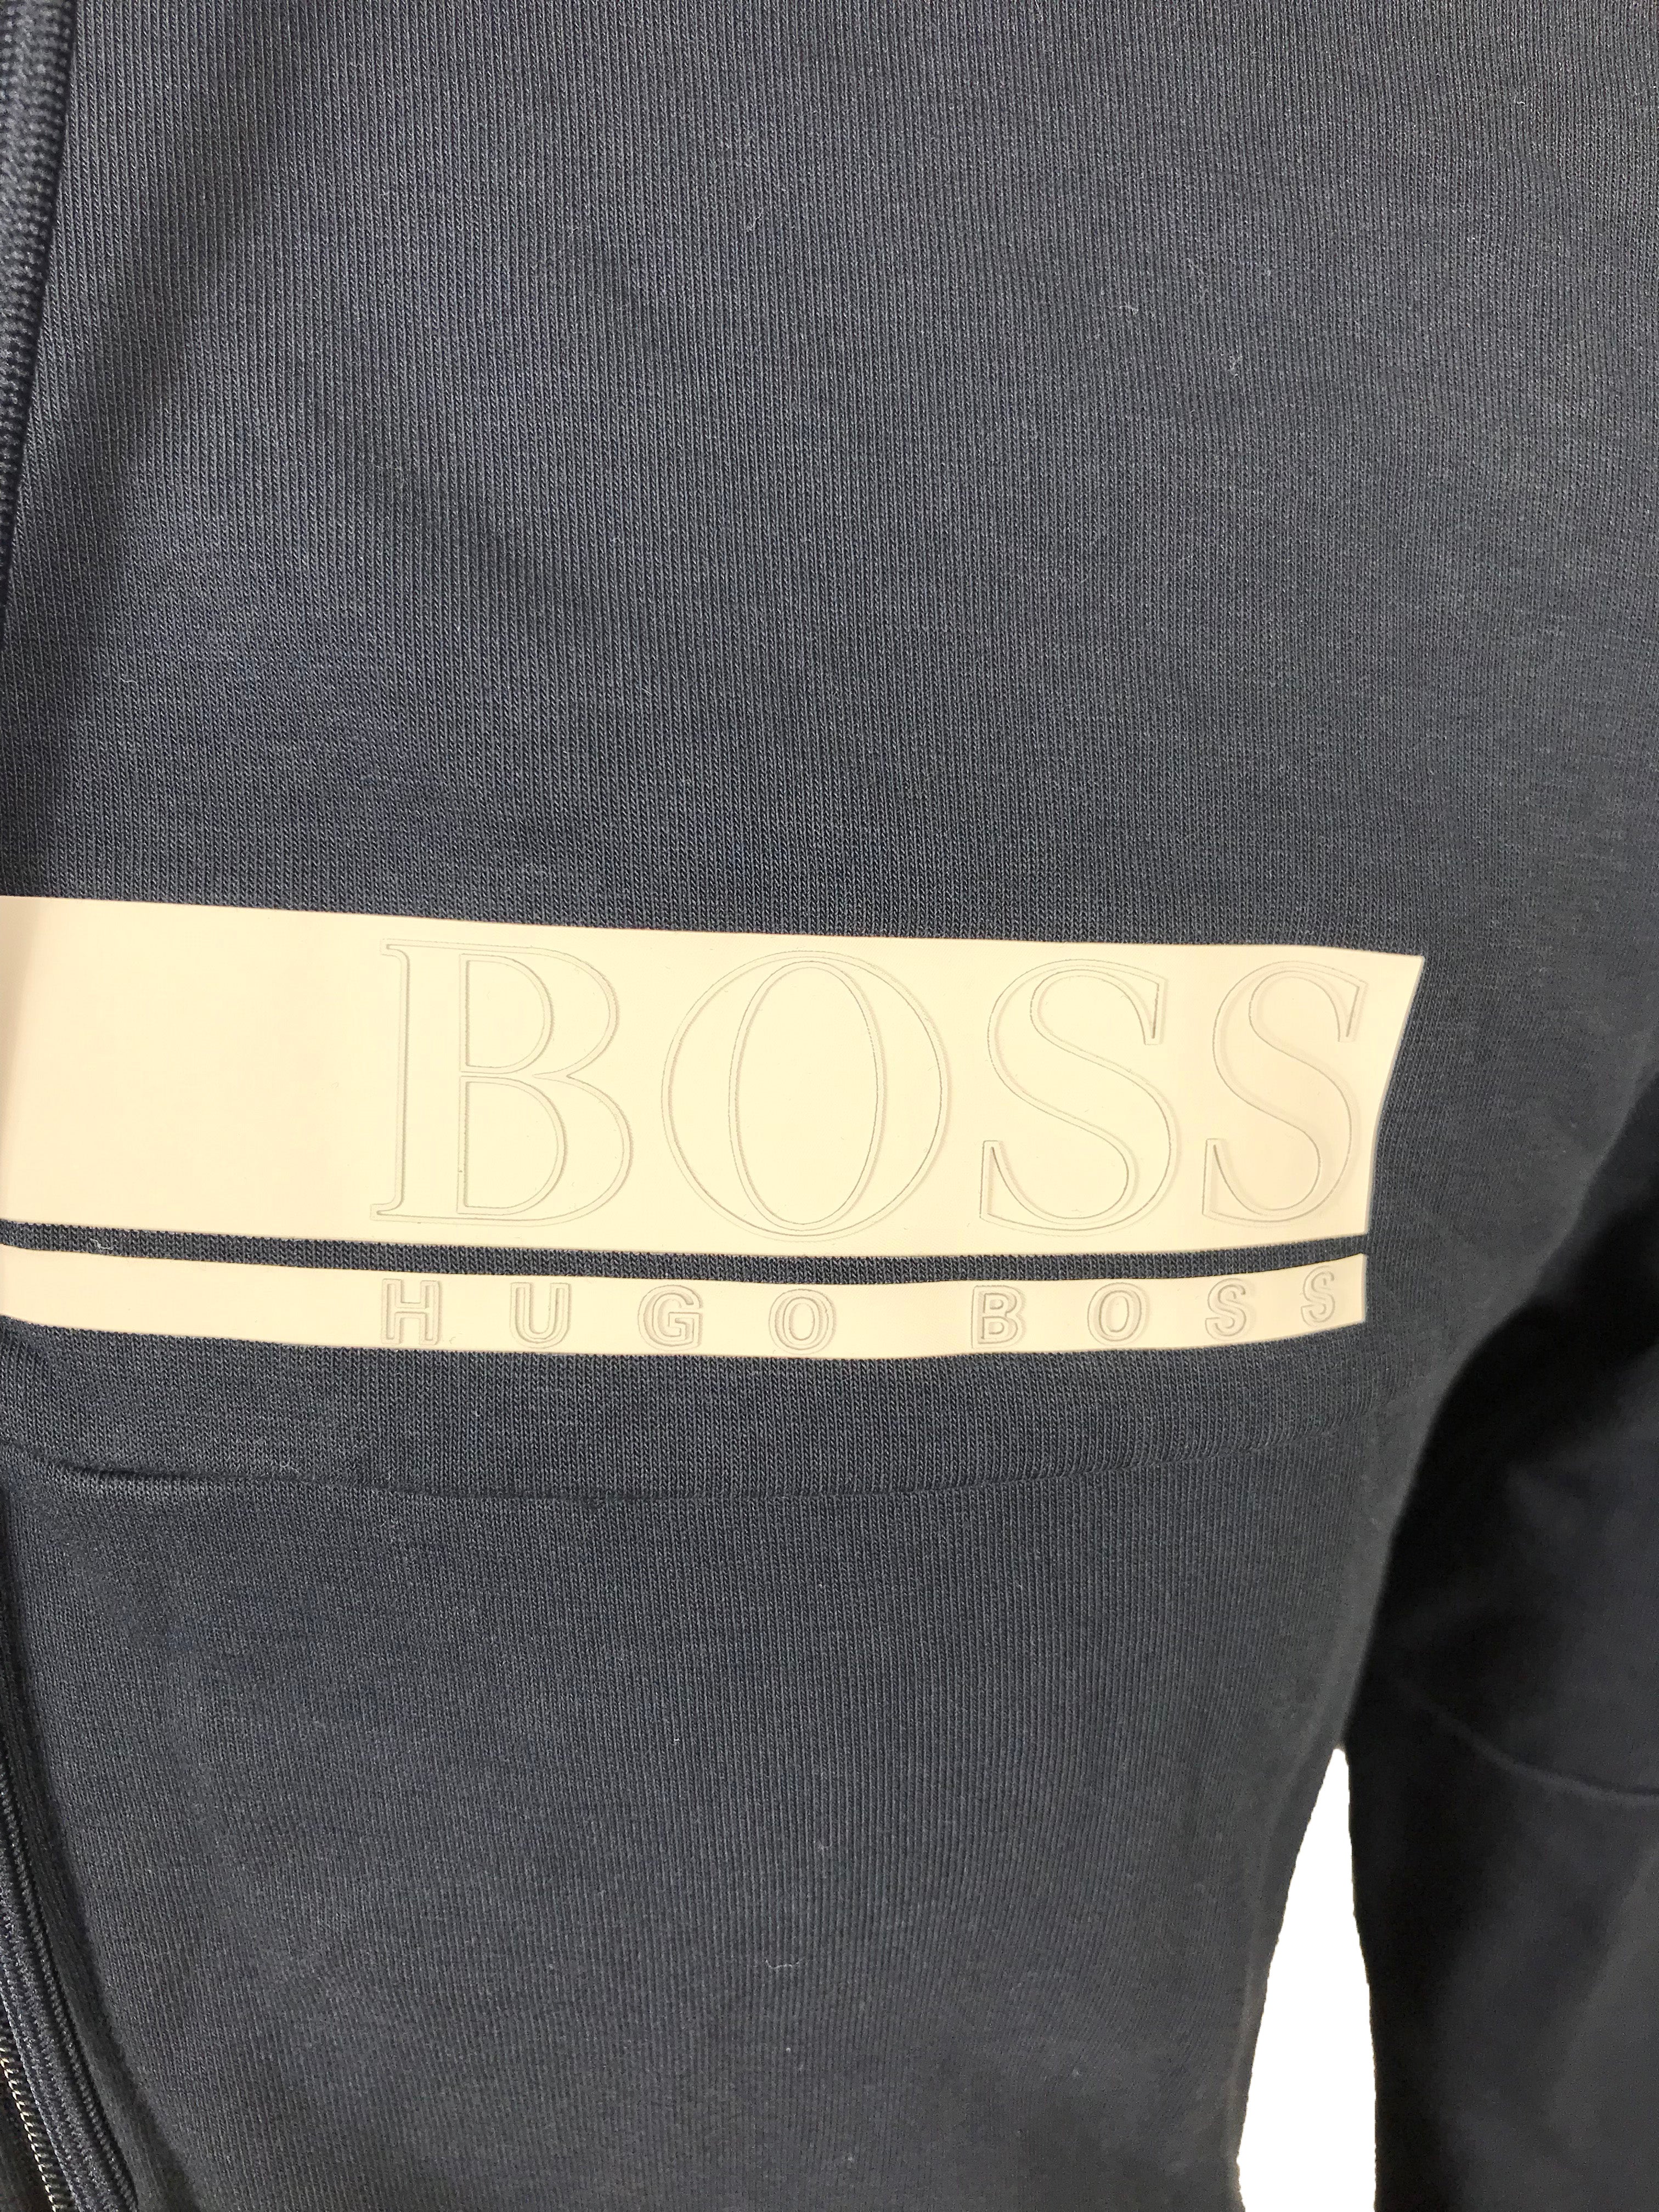 Hugo Boss Navy Zip-Up Sweatshirt Men's Size Small